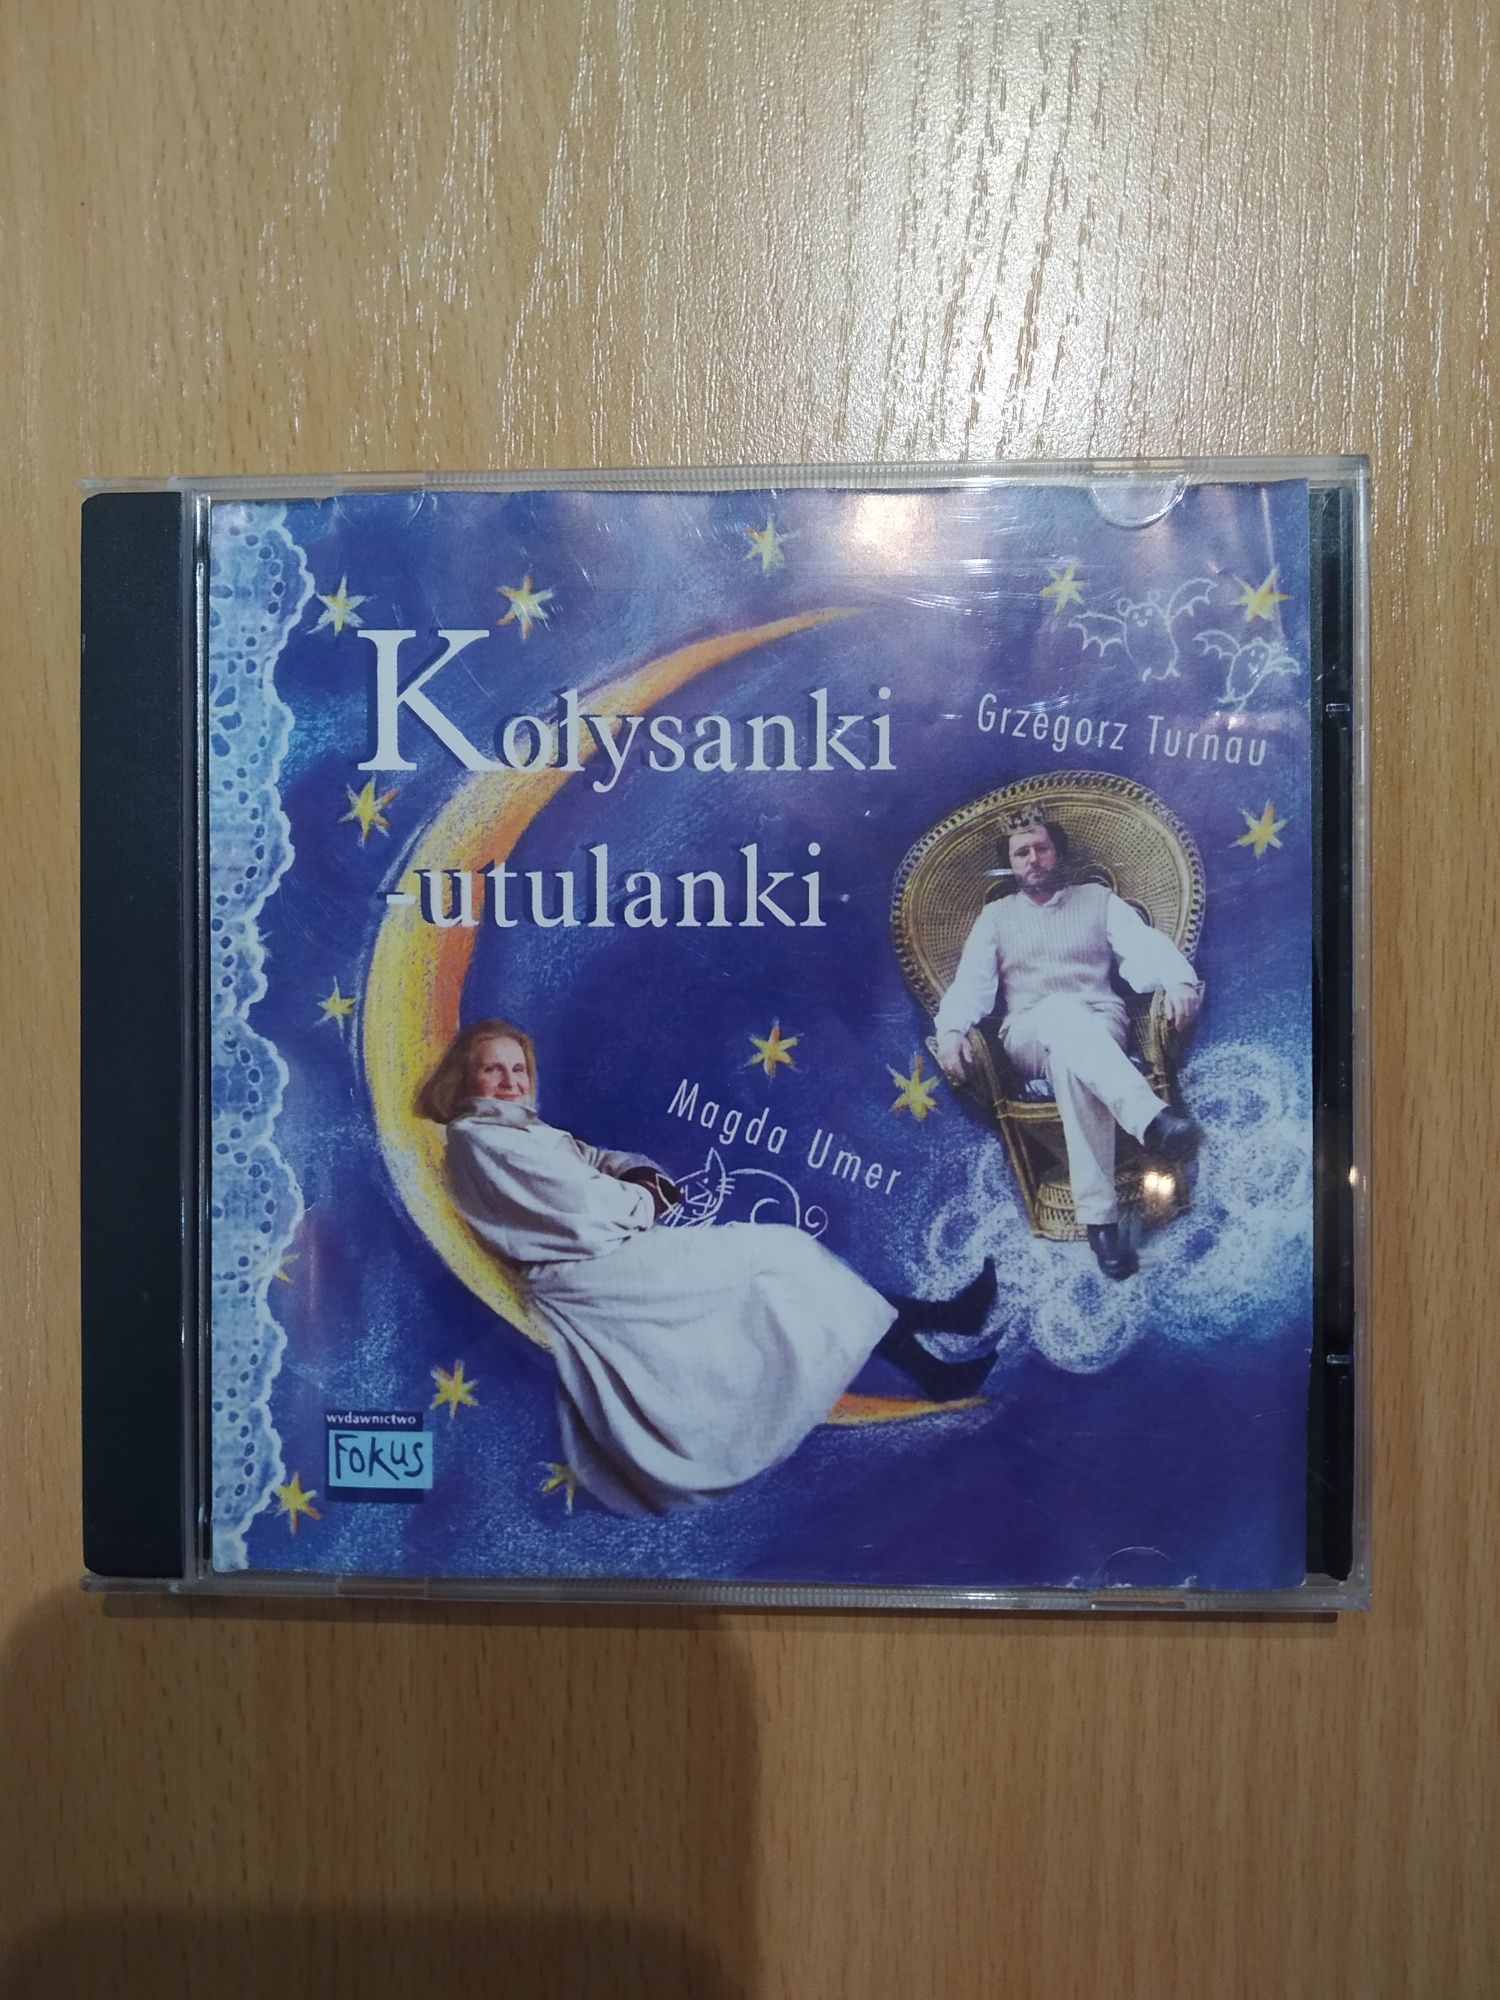 Kołysanki Utulanki Turnau i Umer płyta CD